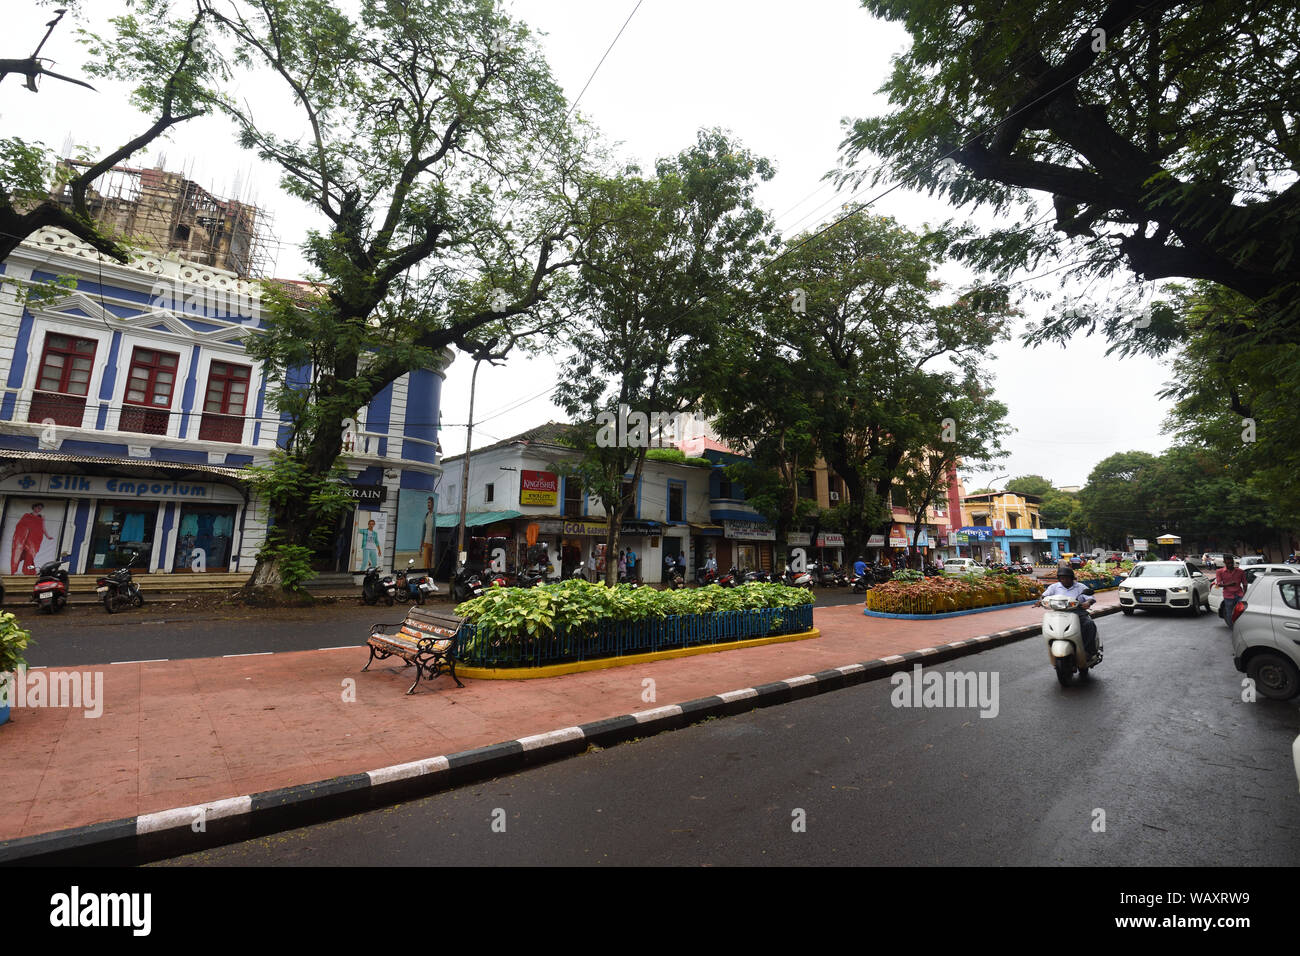 Praça da Igreja. Panaji, Goa, India. Foto Stock